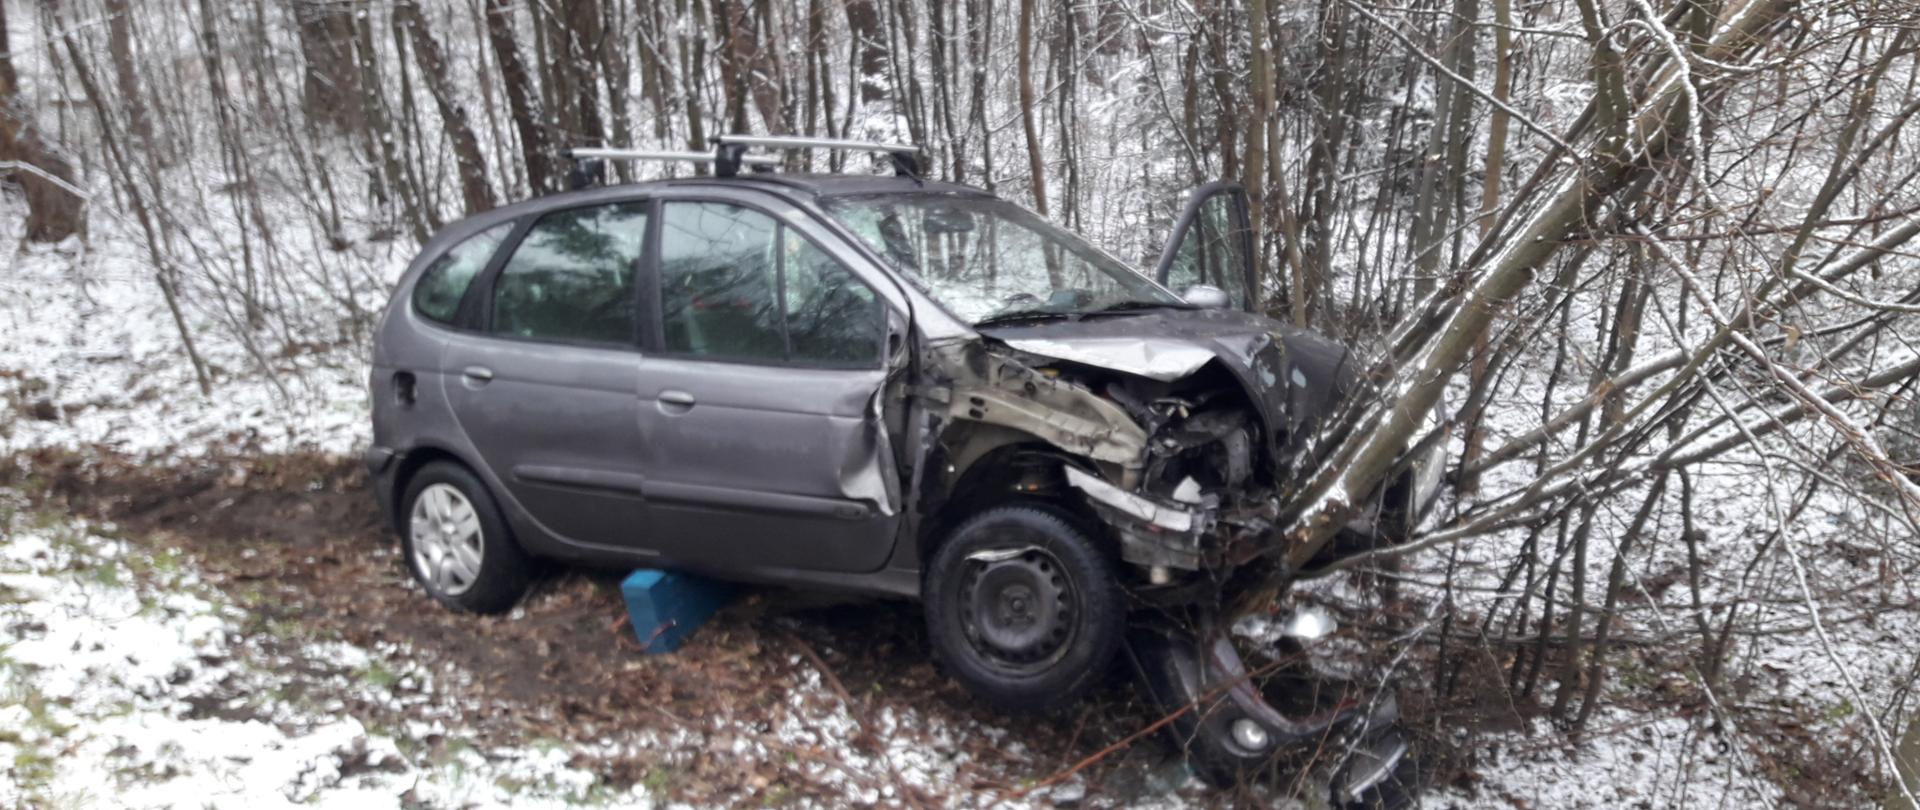 Zdjęcie przedstawia uszkodzony w wyniku zderzenia samochód osobowy marki Renault Scenic, który znajduje się poza jezdnią w przydrożnym rowie.